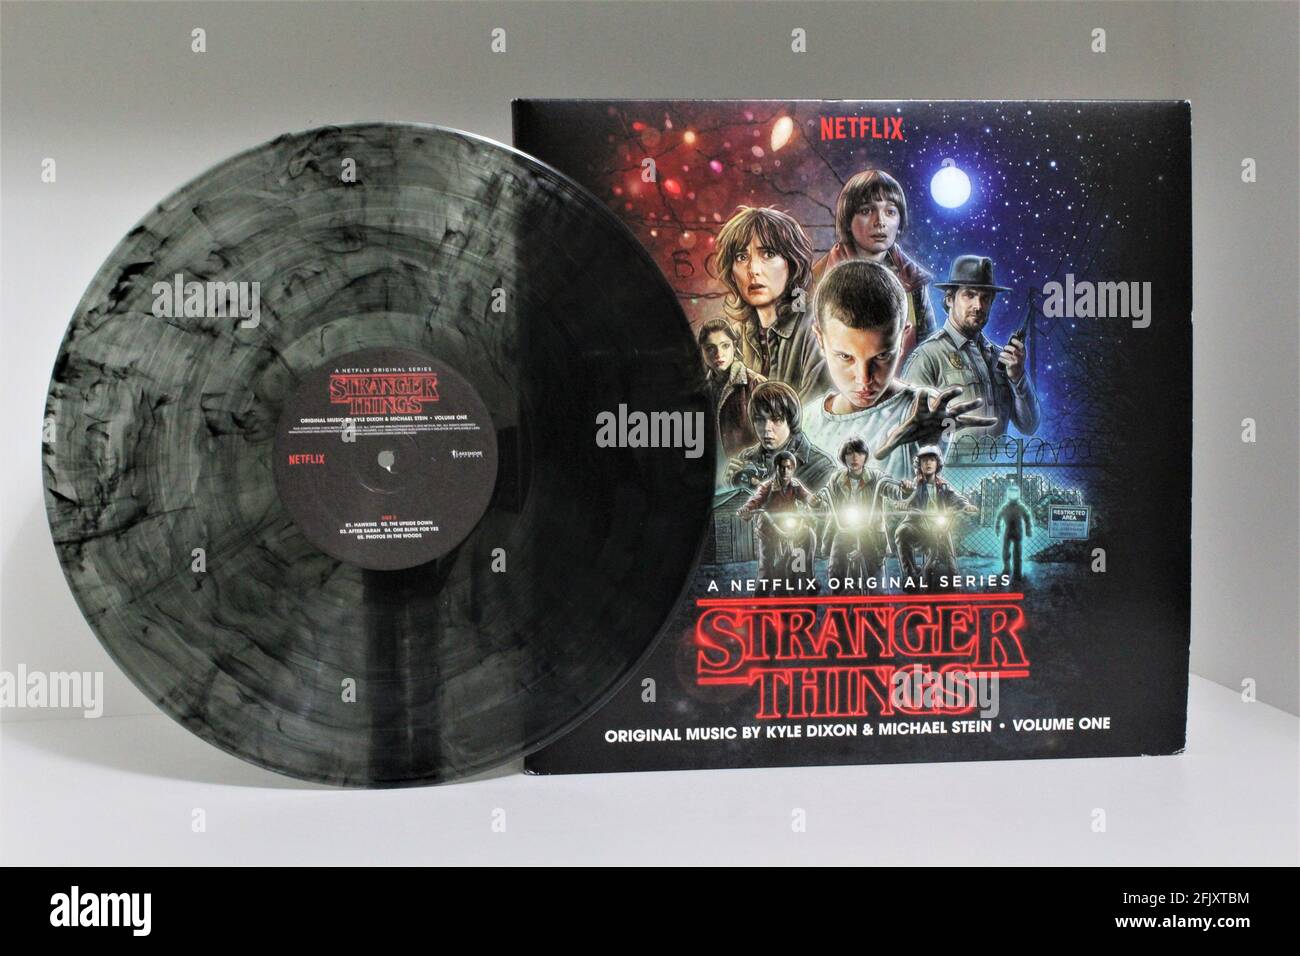 Stranger Things Volumen Una banda sonora en vinilo disco LP de la serie de televisión en Netflix. El diseño de vinilo es negro y claro con efecto de humo. Foto de stock